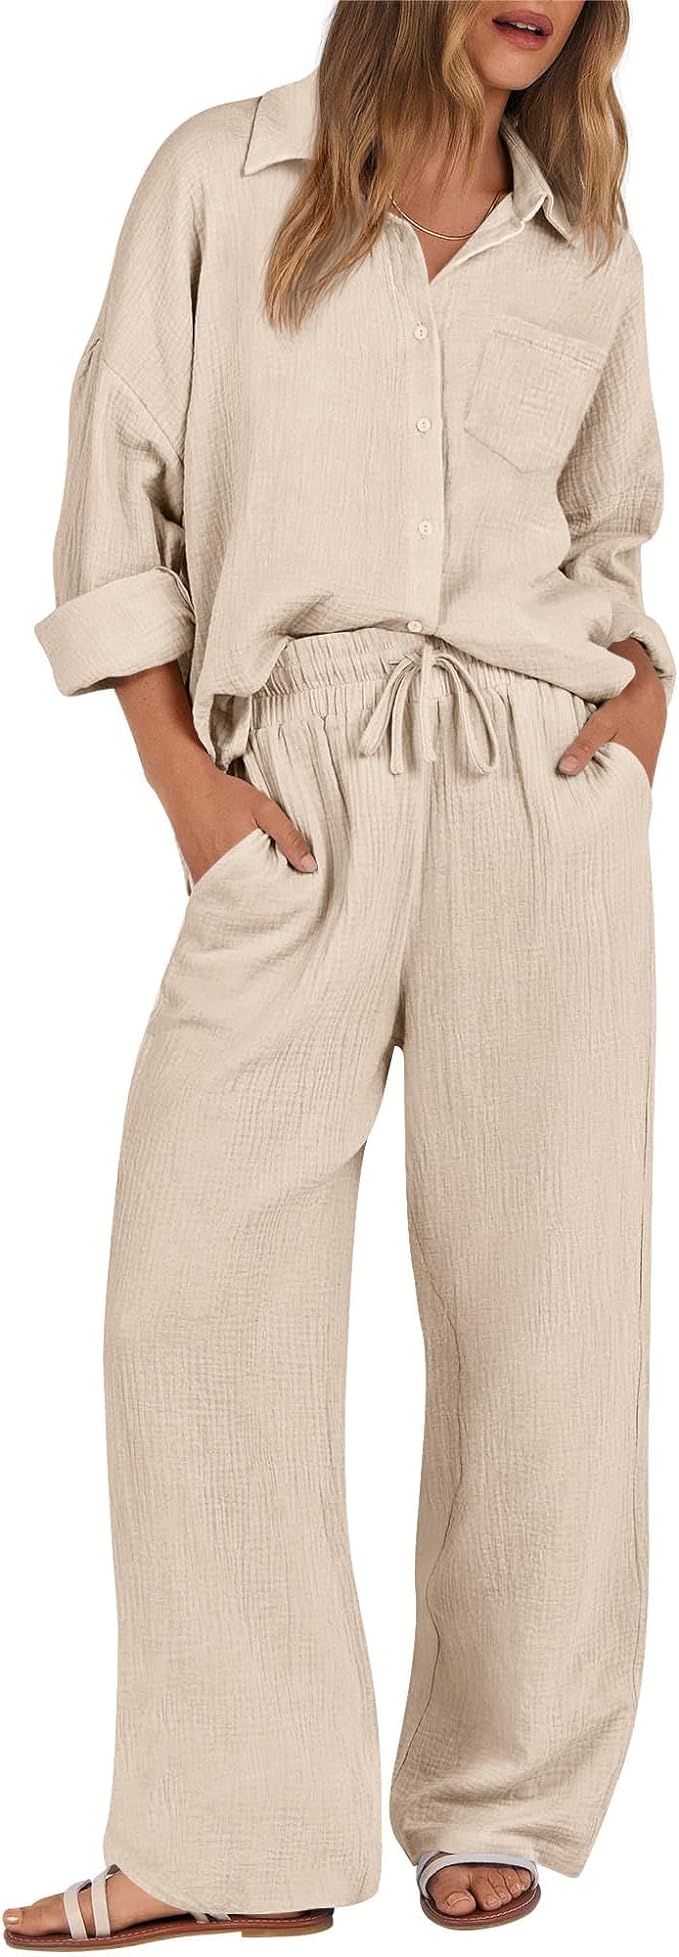 KIRUNDO Women 2 Piece Outfits Cotton Long Sleeve Shirt Wide Leg Pants Matching Lounge Sets Trendy... | Amazon (US)